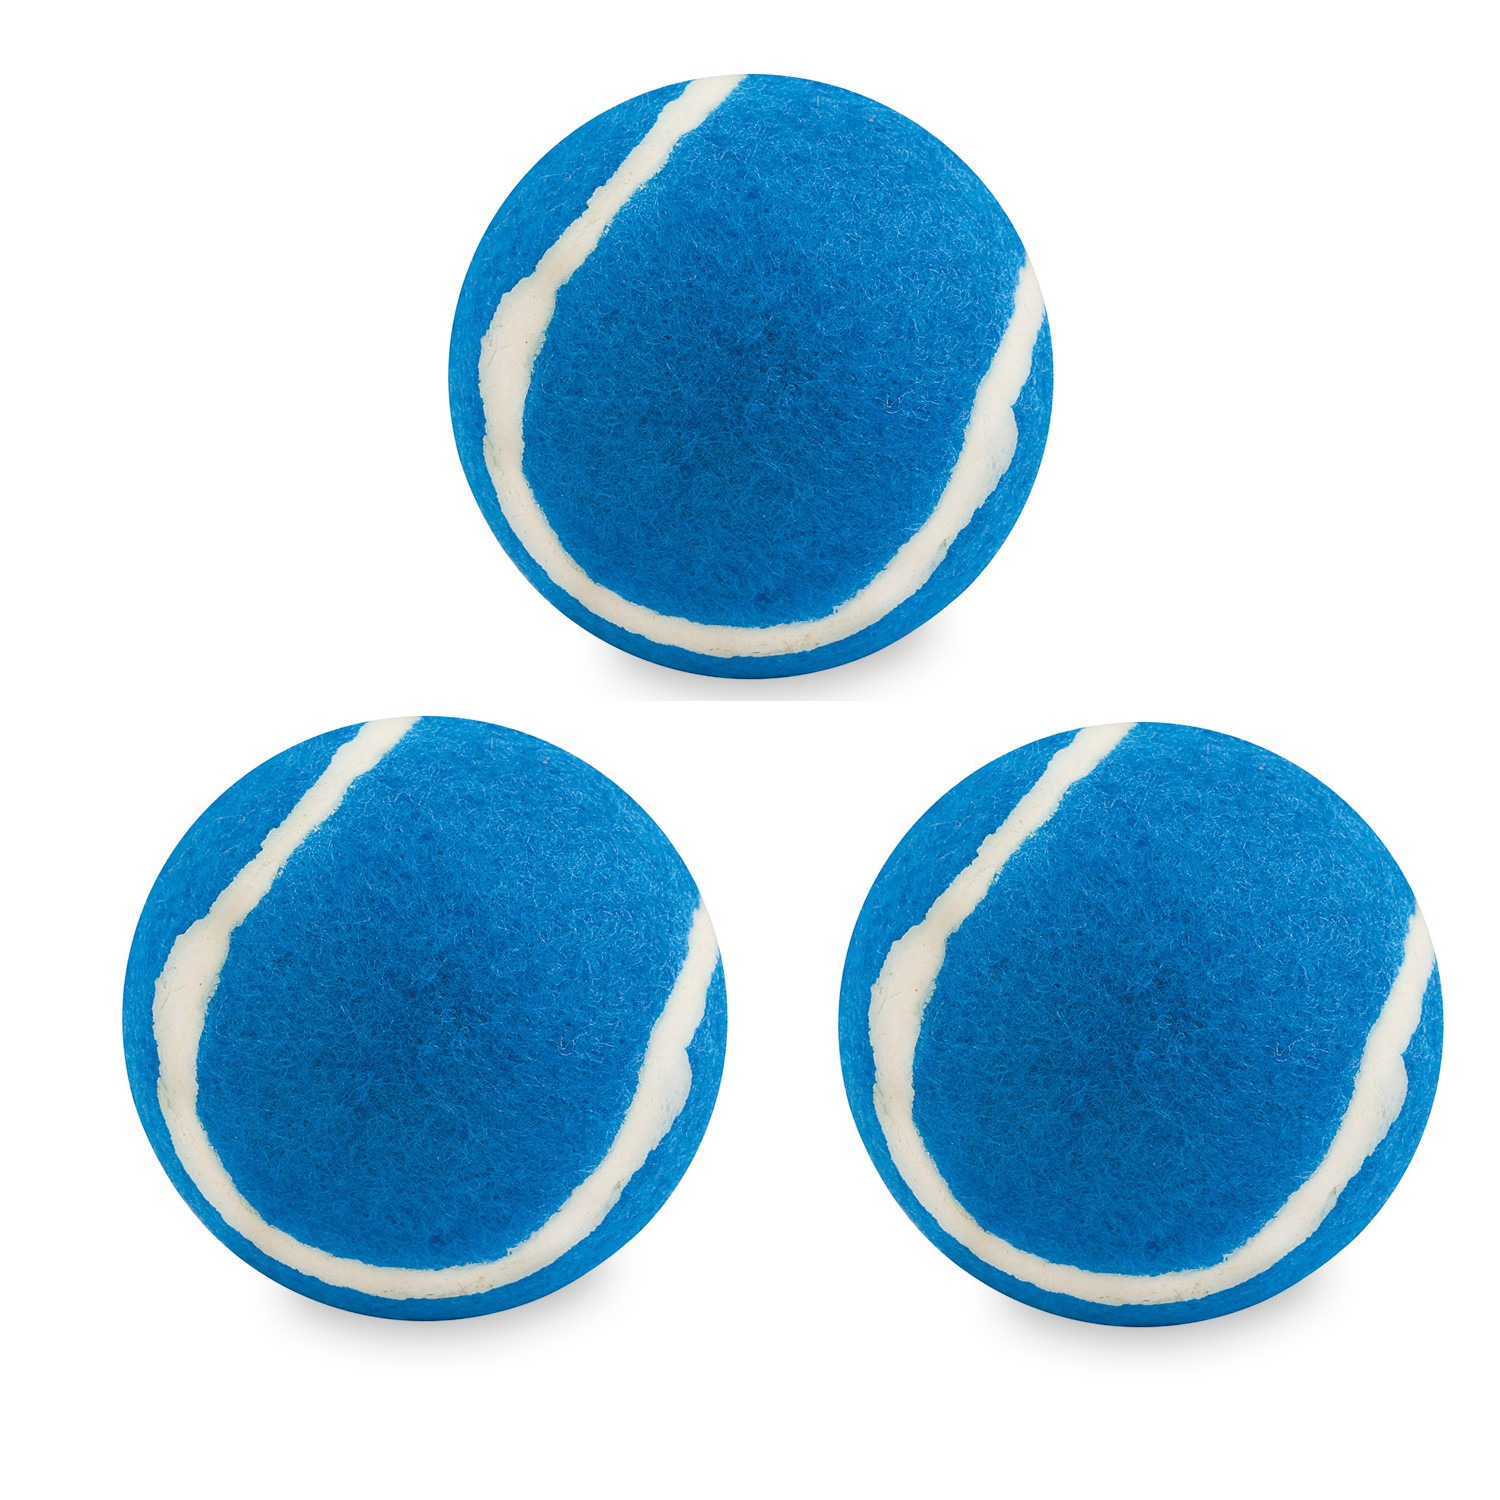 5x stuks blauwe hondenballen 6,4 cm